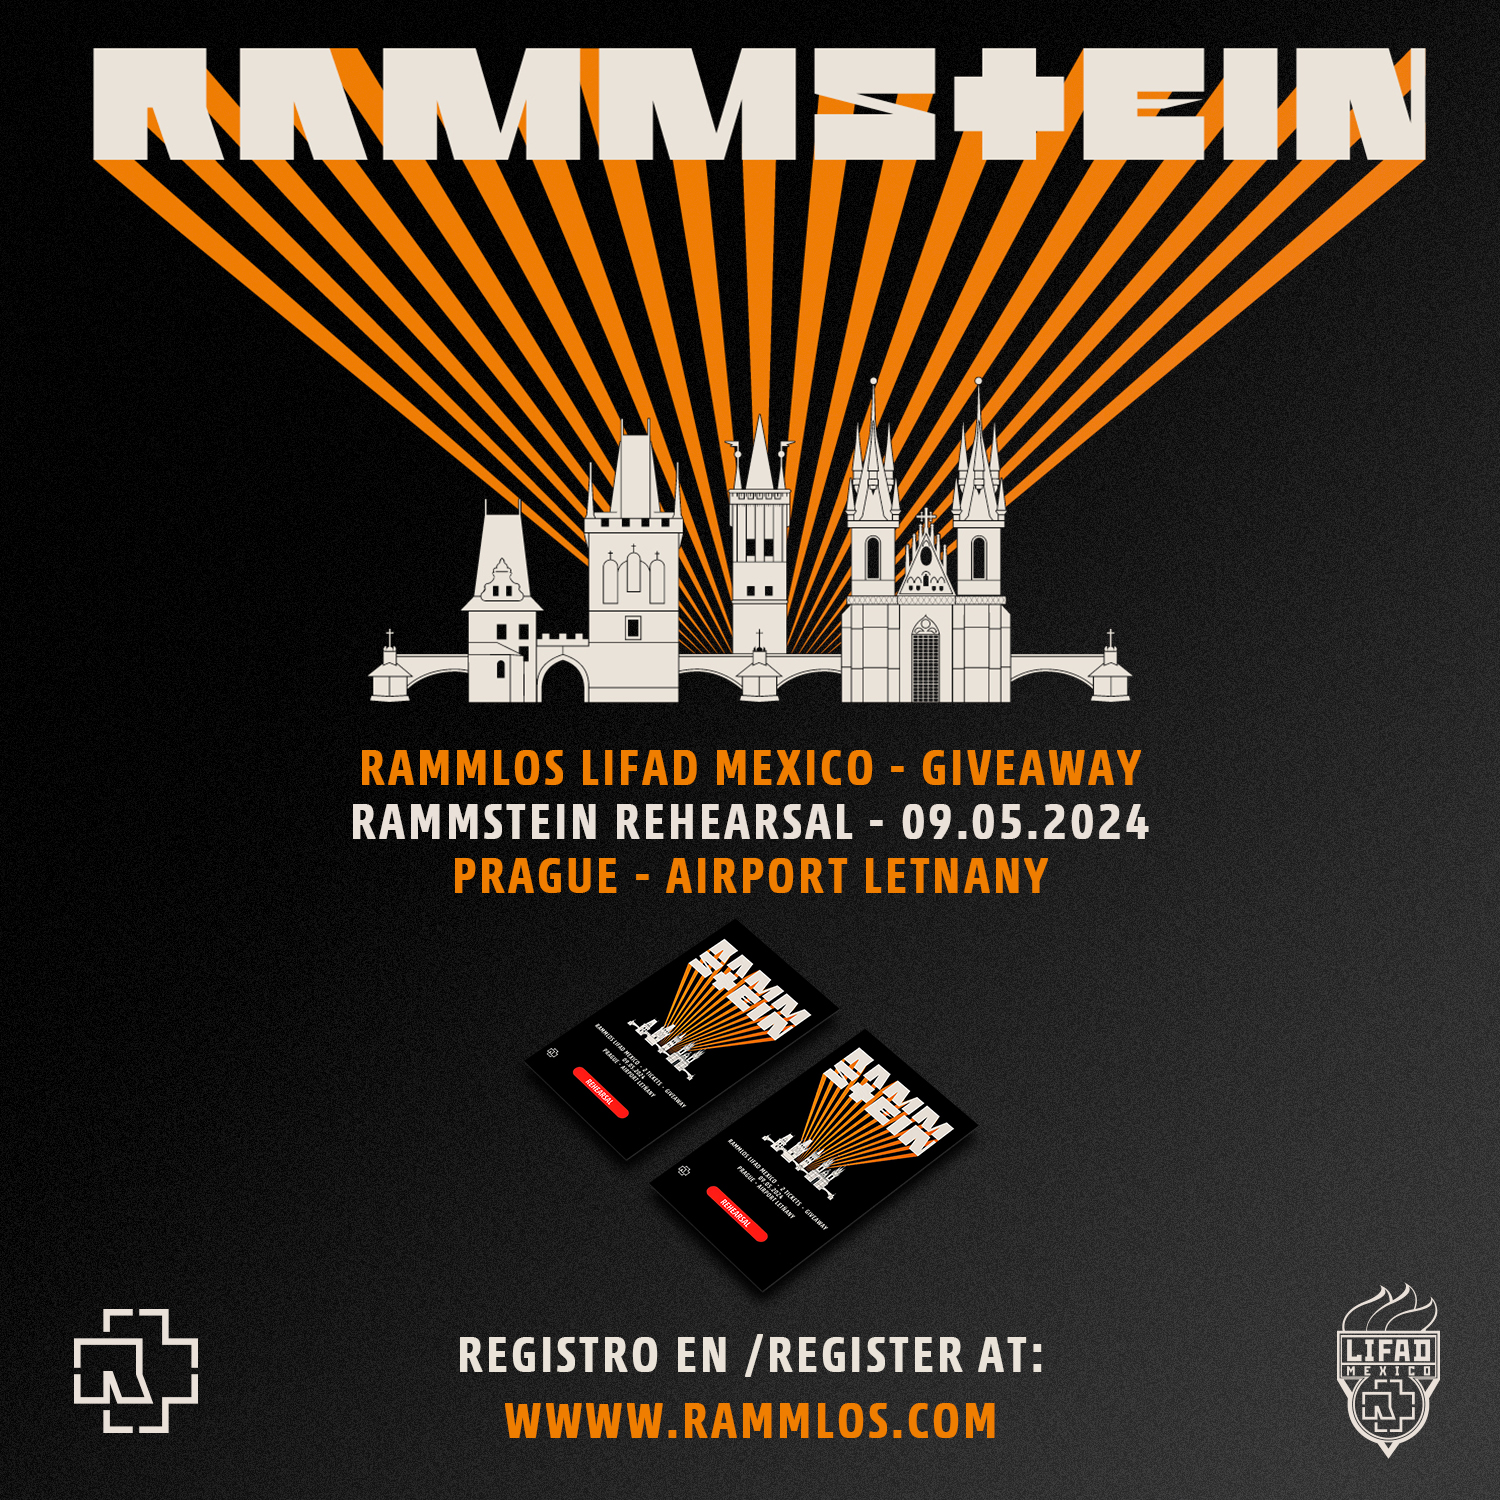 Rammstein Rehearsal 2024 Prague